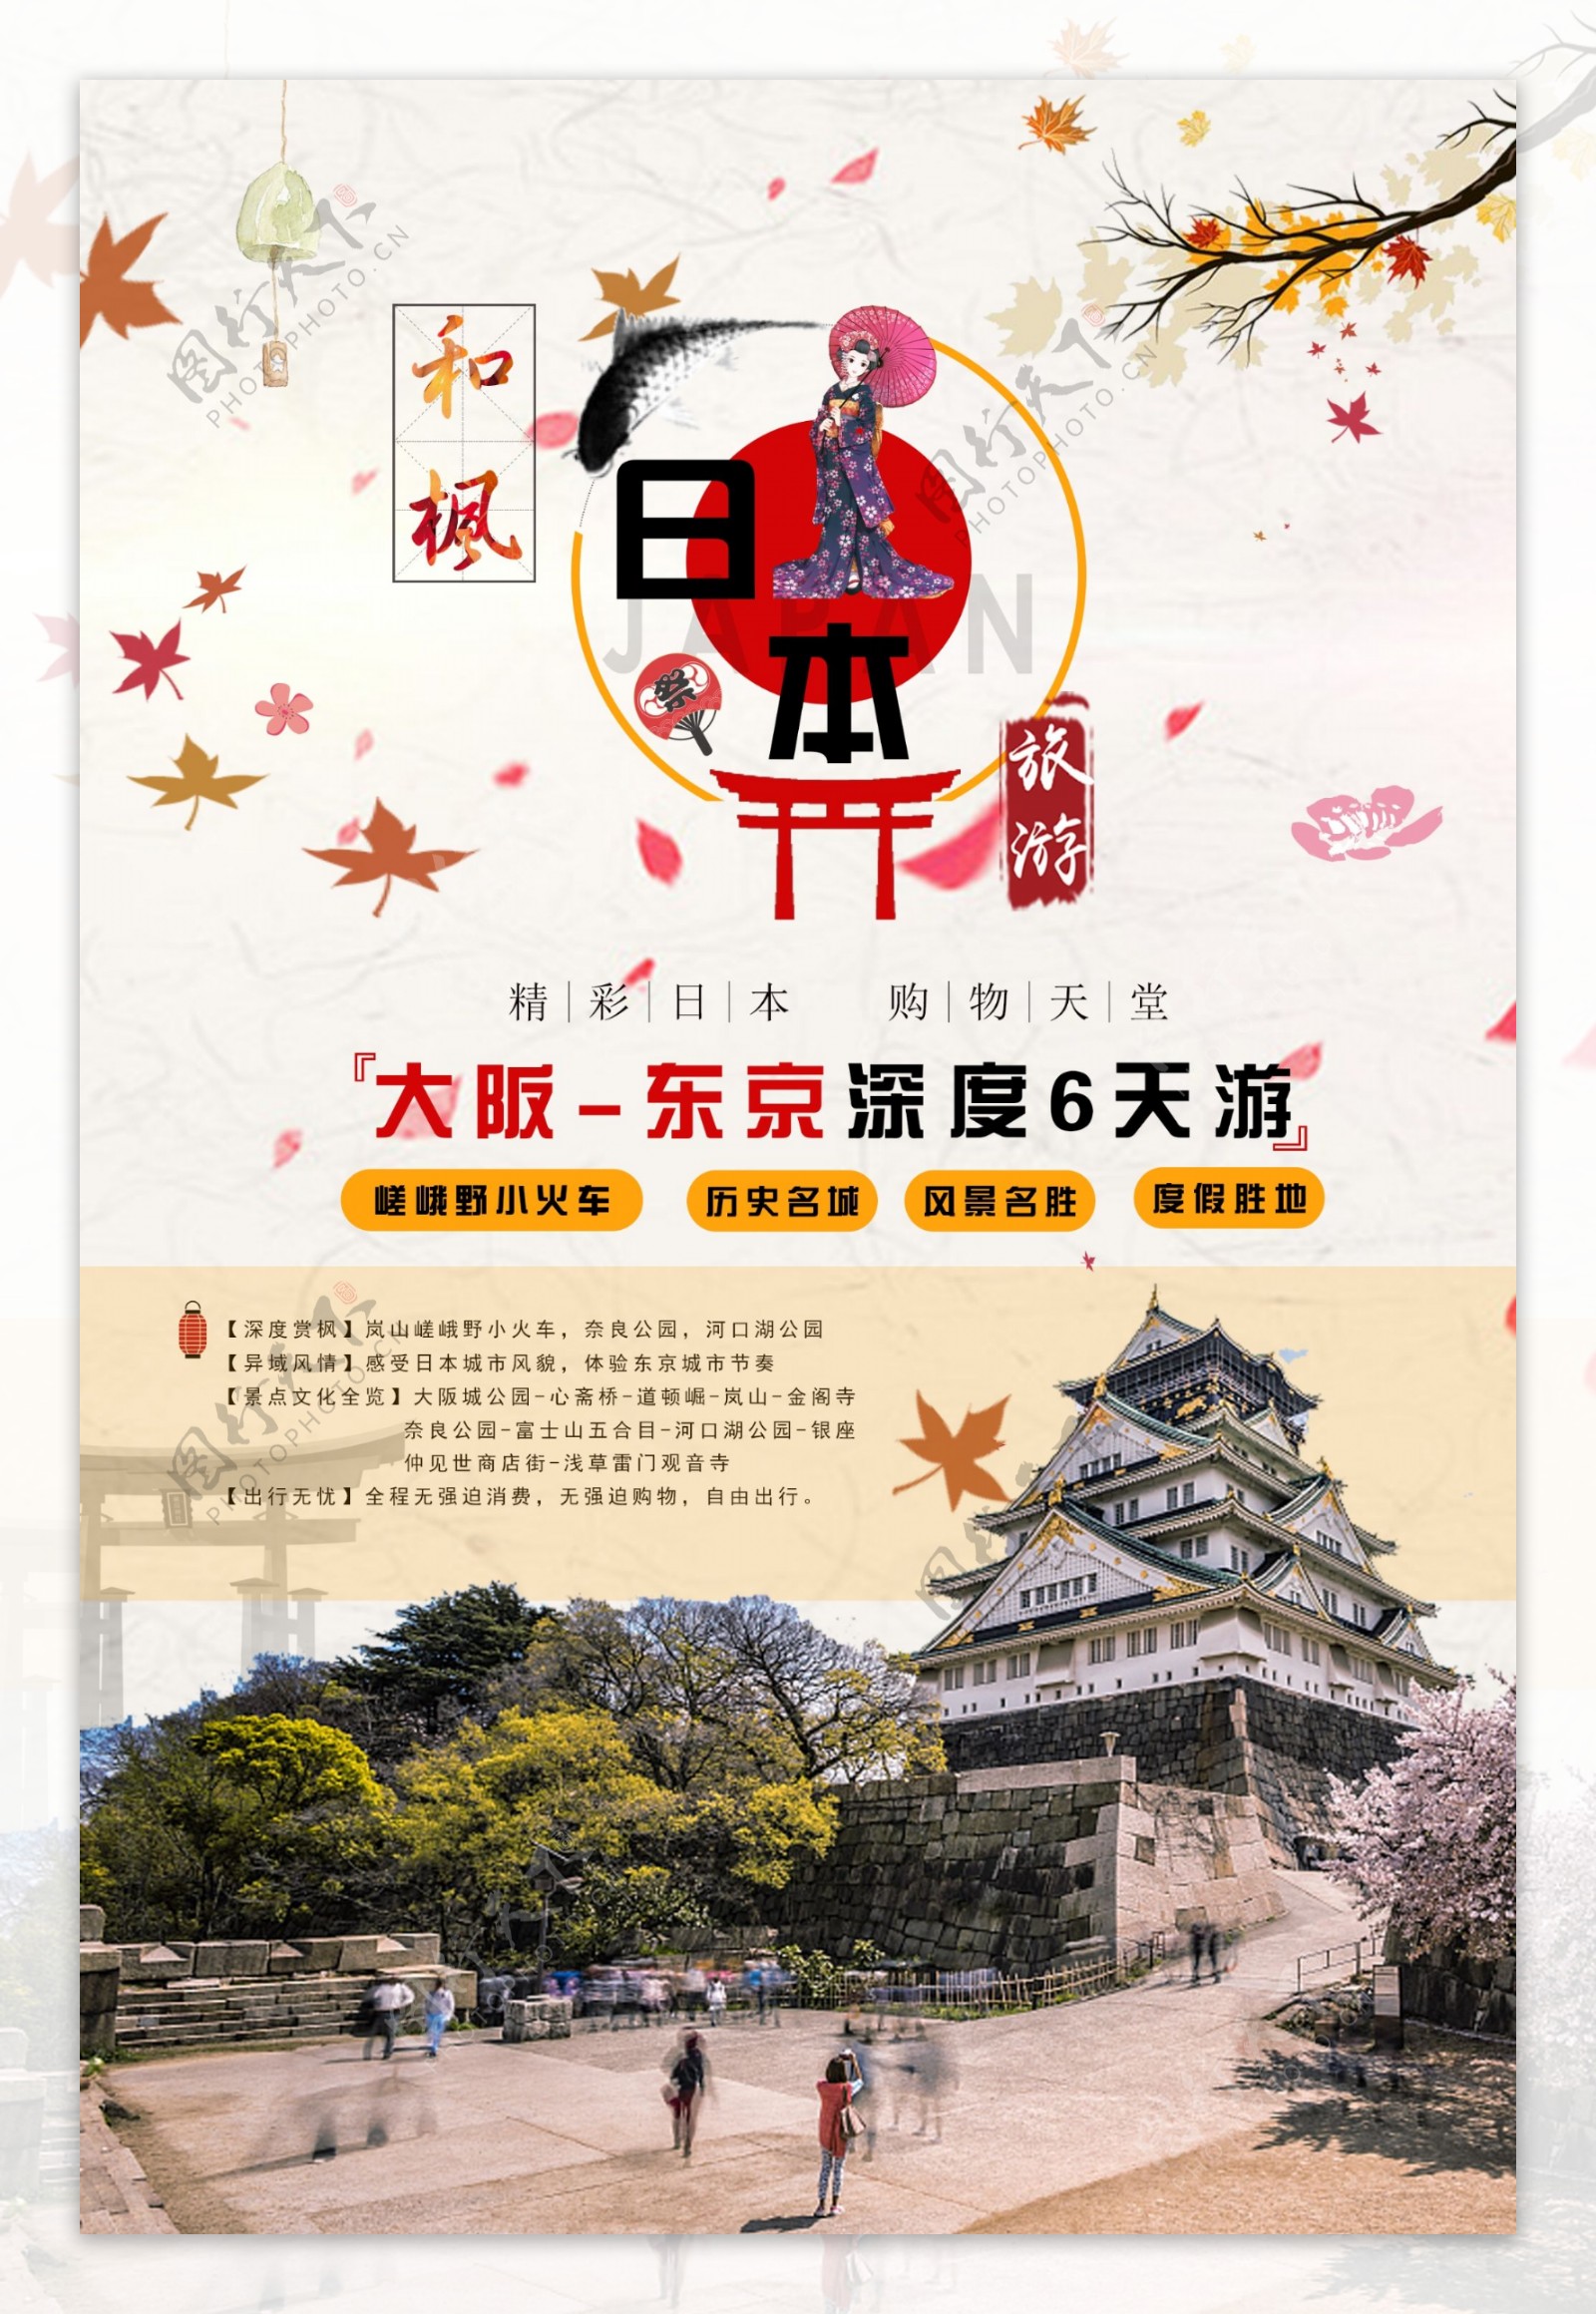 日本旅游促销海报